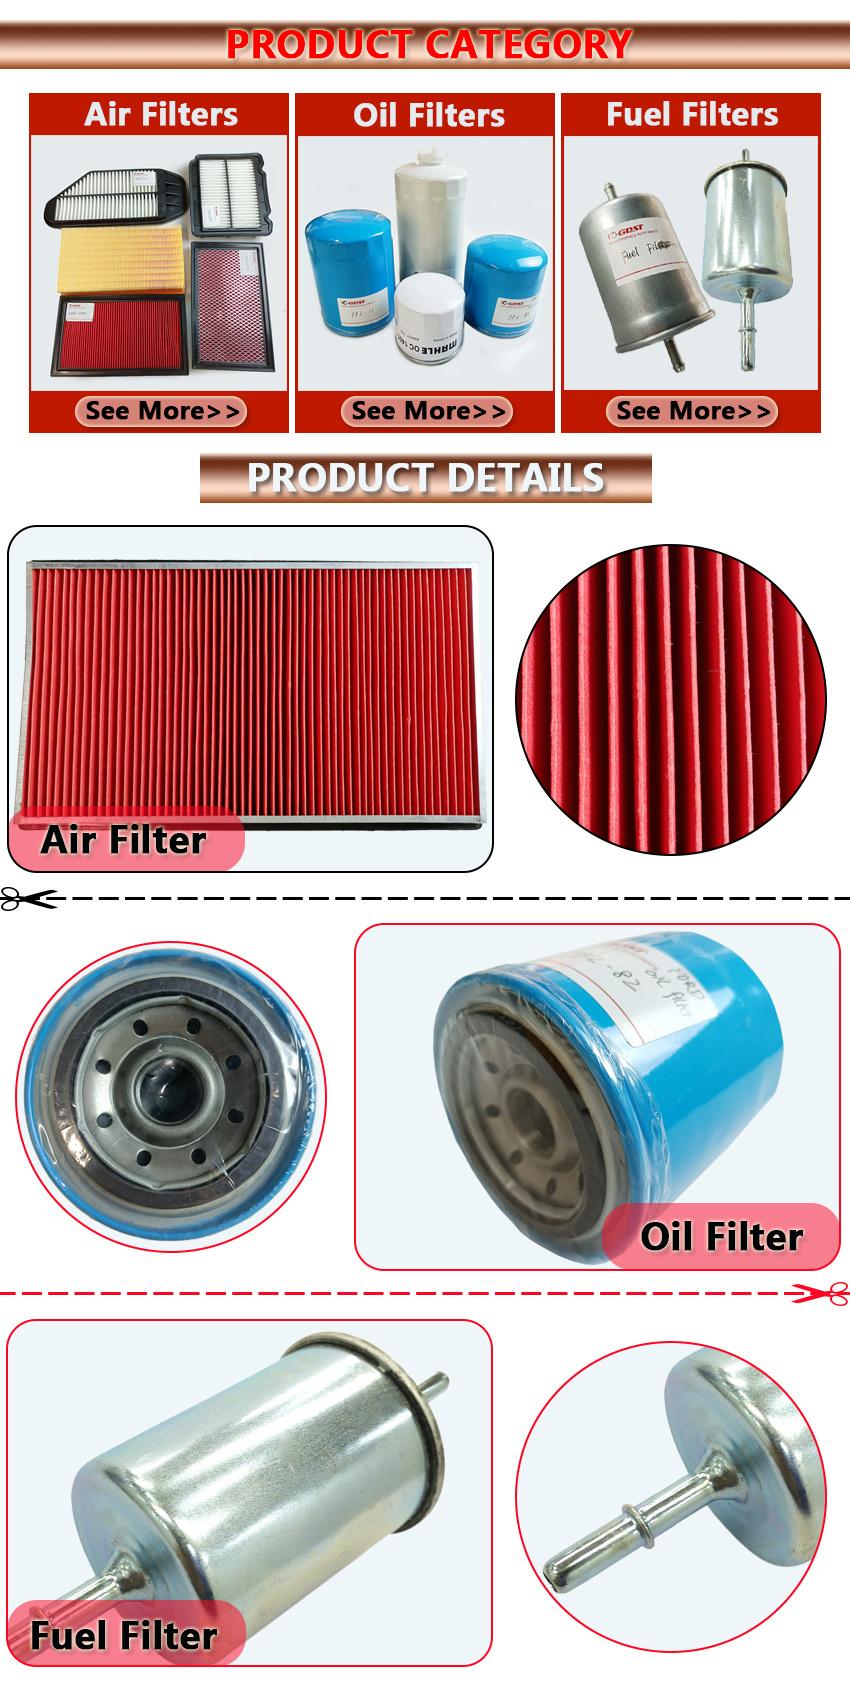 Gdst Auto Parts Performance Automotive Oil Filter Supplier A6111800009 1121800009